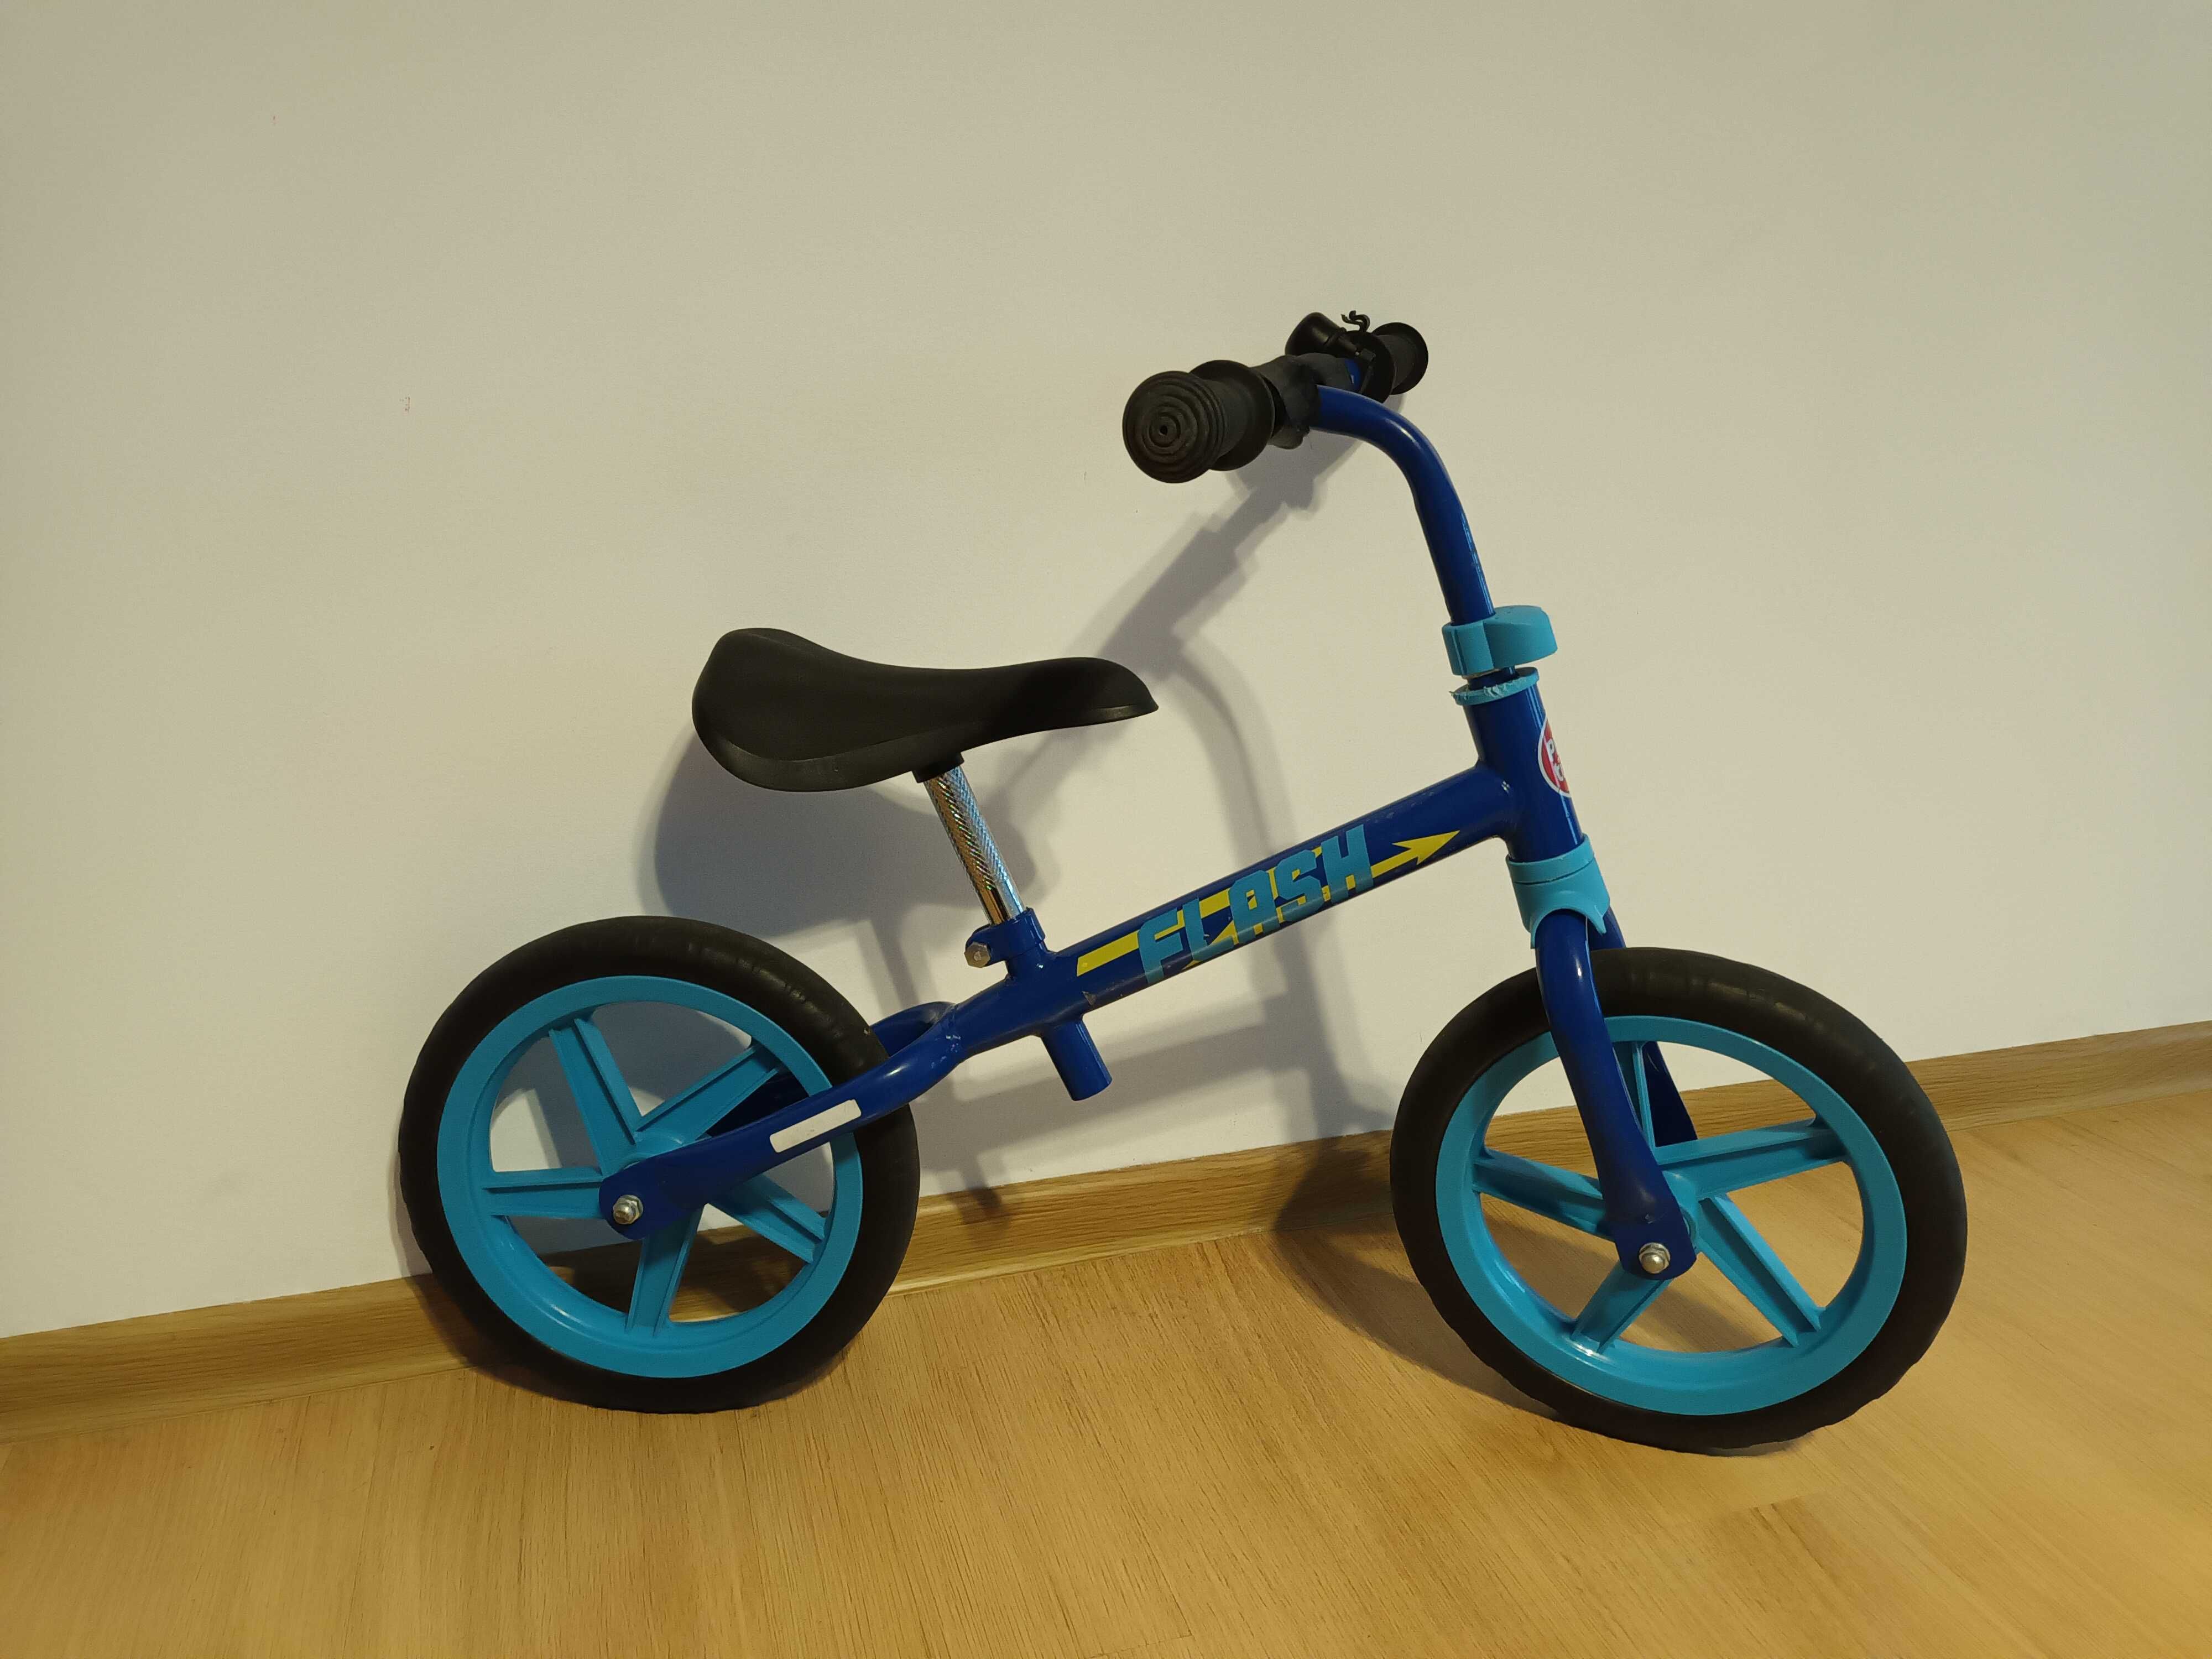 Bicicleta fara pedale pentru copii